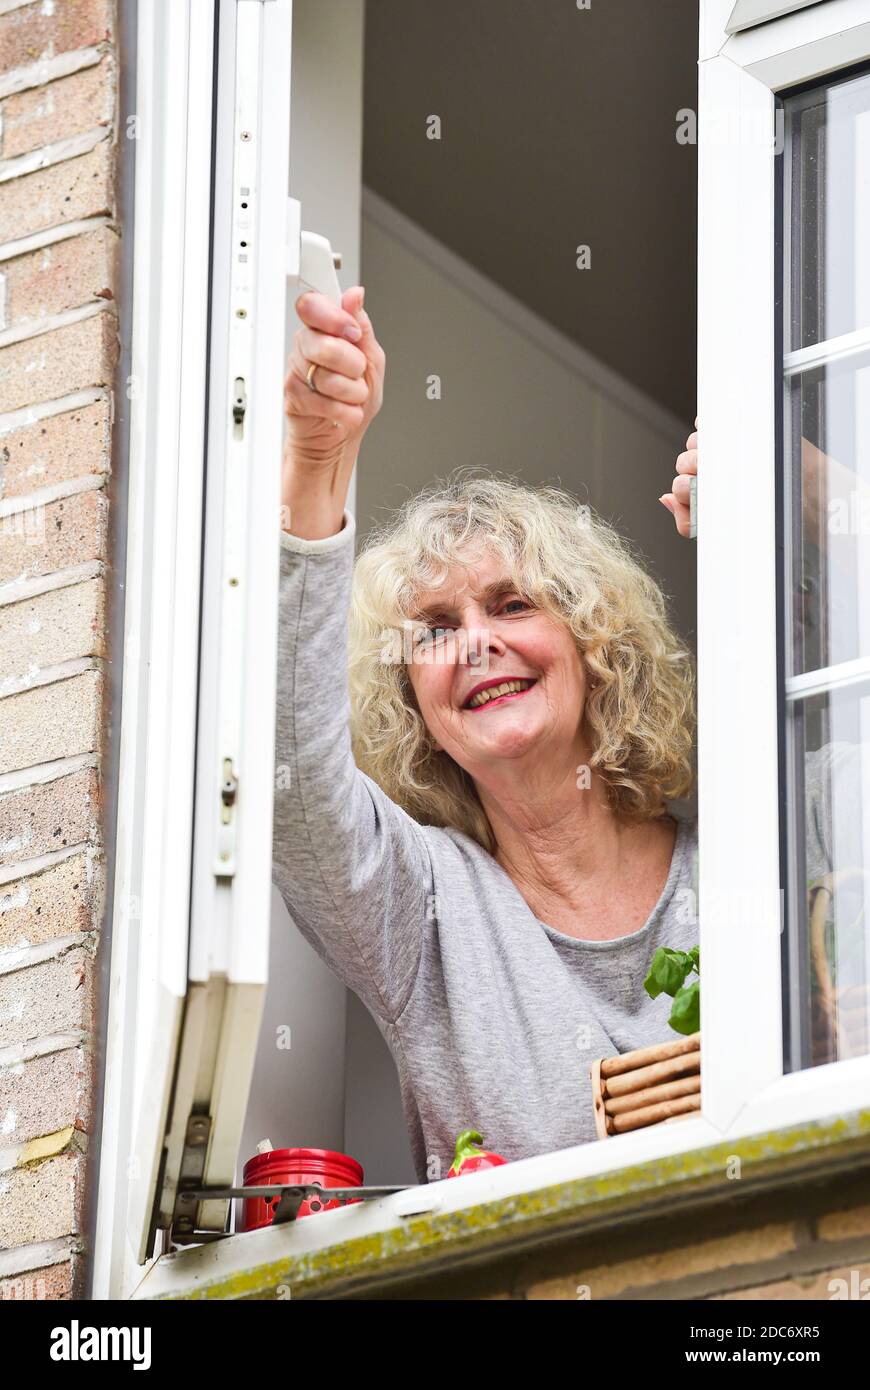 Frau zu Hause öffnet Küchenfenster, um frisch einzulassen Luft wie empfohlen, um zu helfen, Coronavirus COVID-19-Virus zu bekämpfen Stockfoto